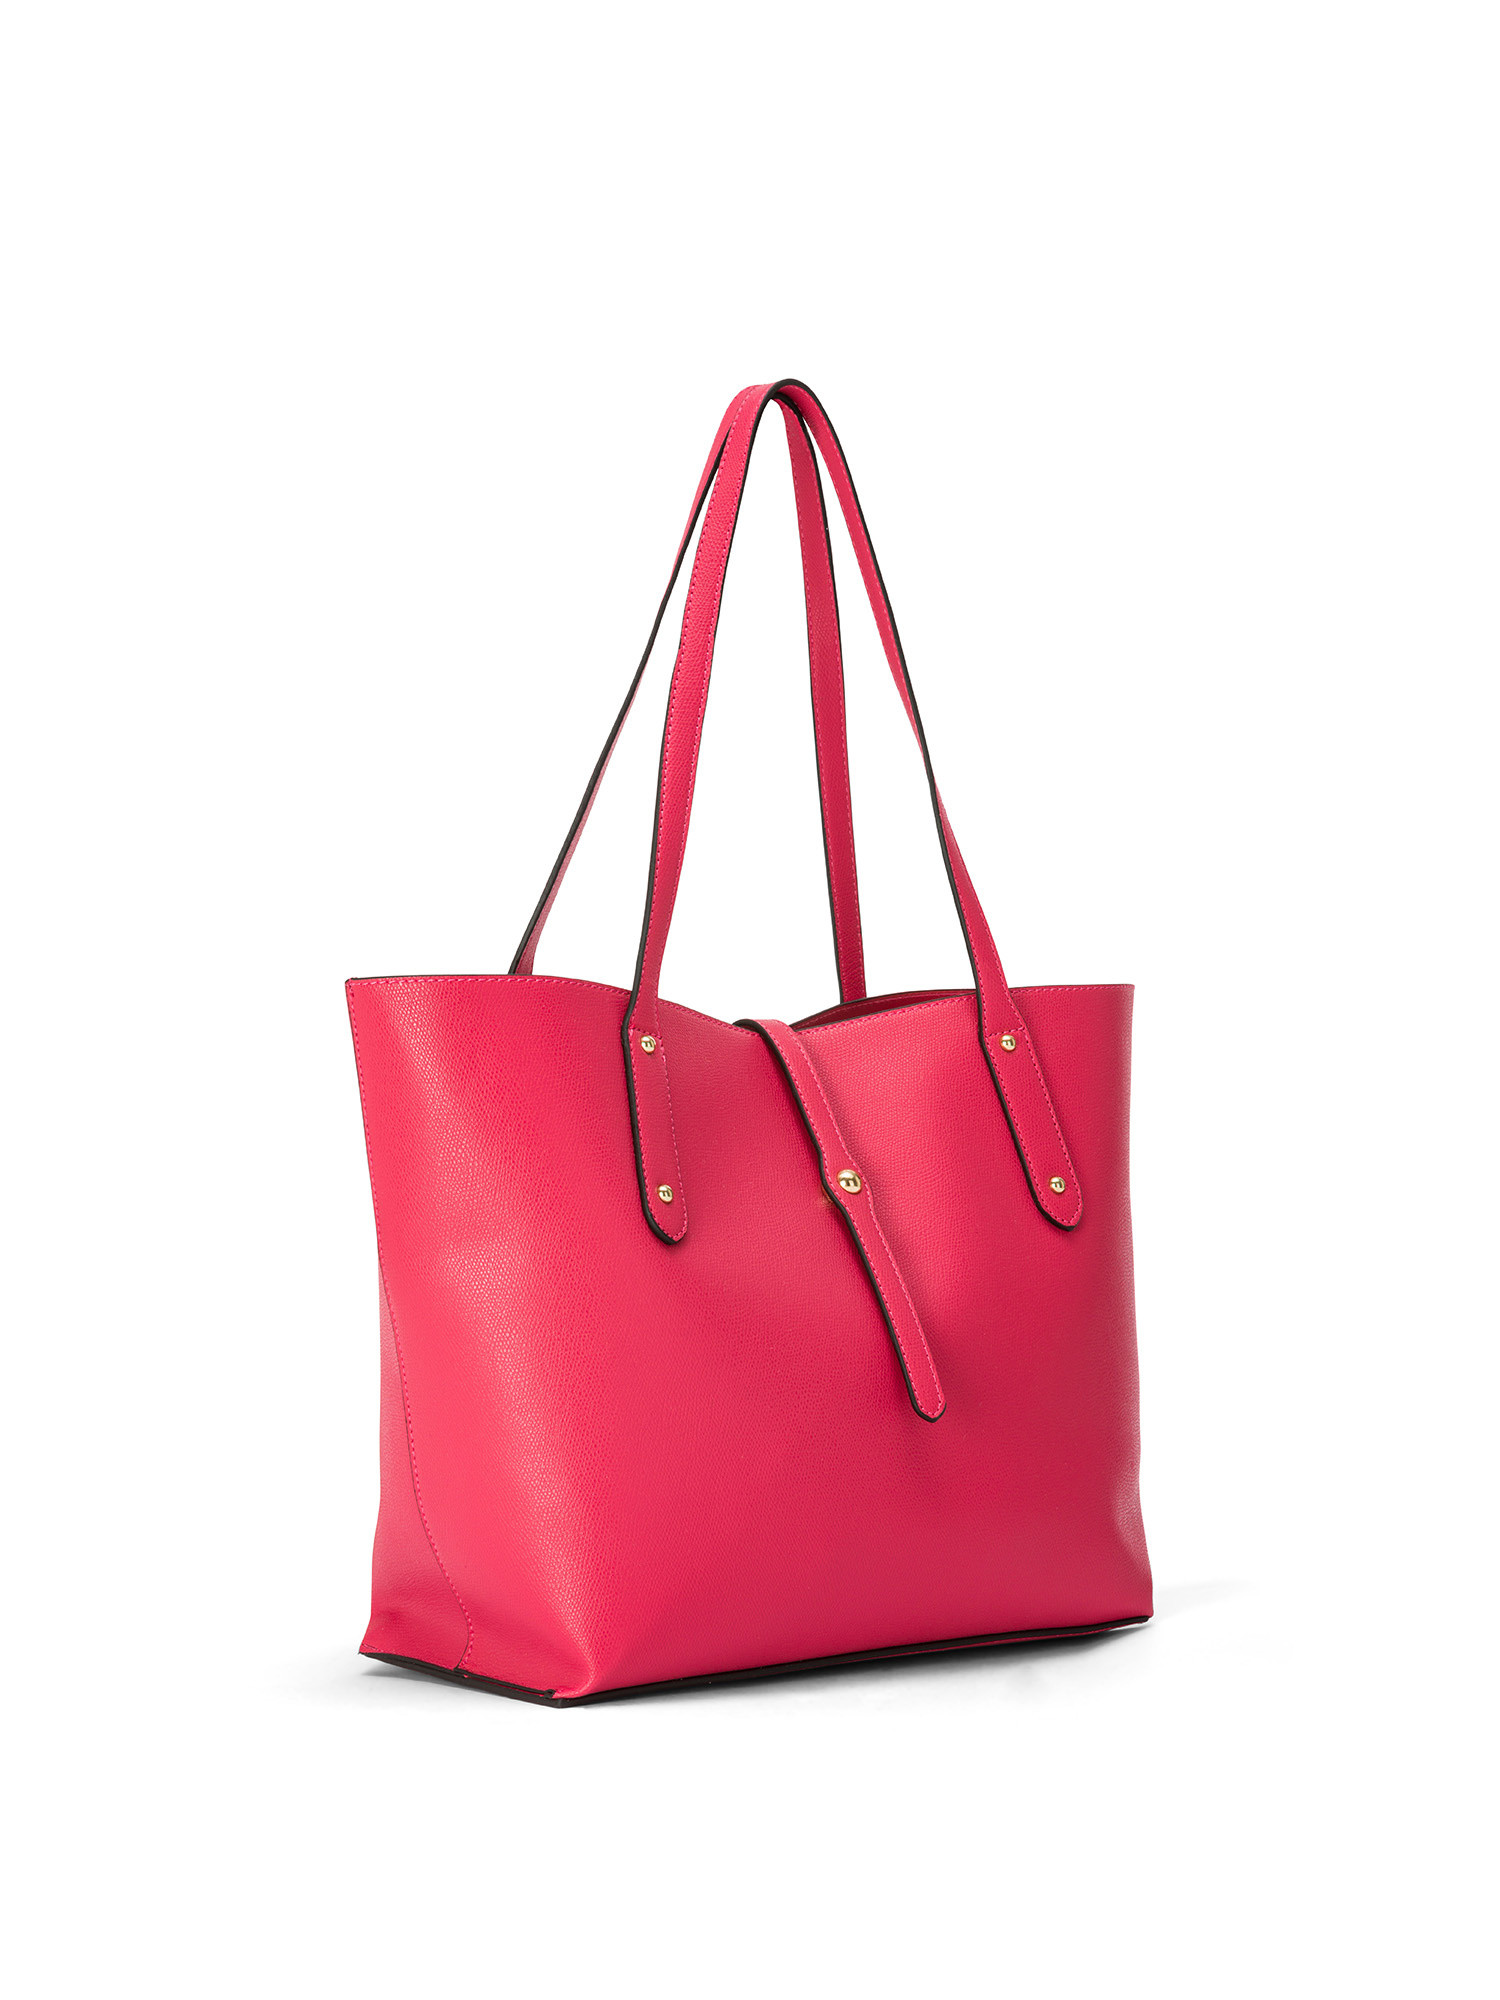 Koan - Shopping bag, Pink Fuchsia, large image number 1